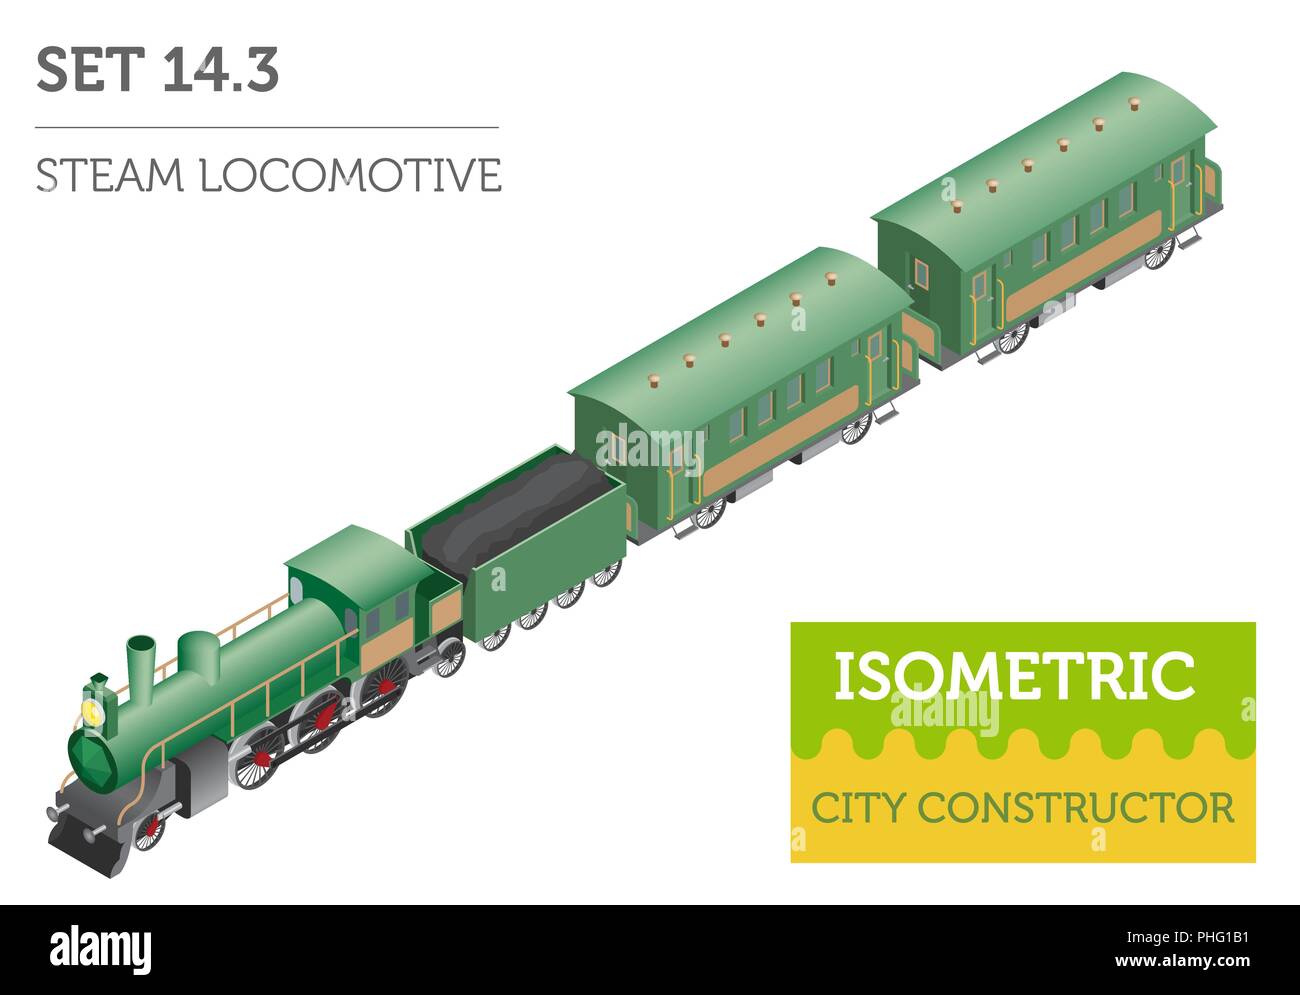 3d-isometrische retro Eisenbahn mit Dampflokomotive und Kutschen. Stadtplan Konstruktor Elemente. Ihre eigene Infografik Sammlung aufzubauen. Vektor Lllustrat Stock Vektor